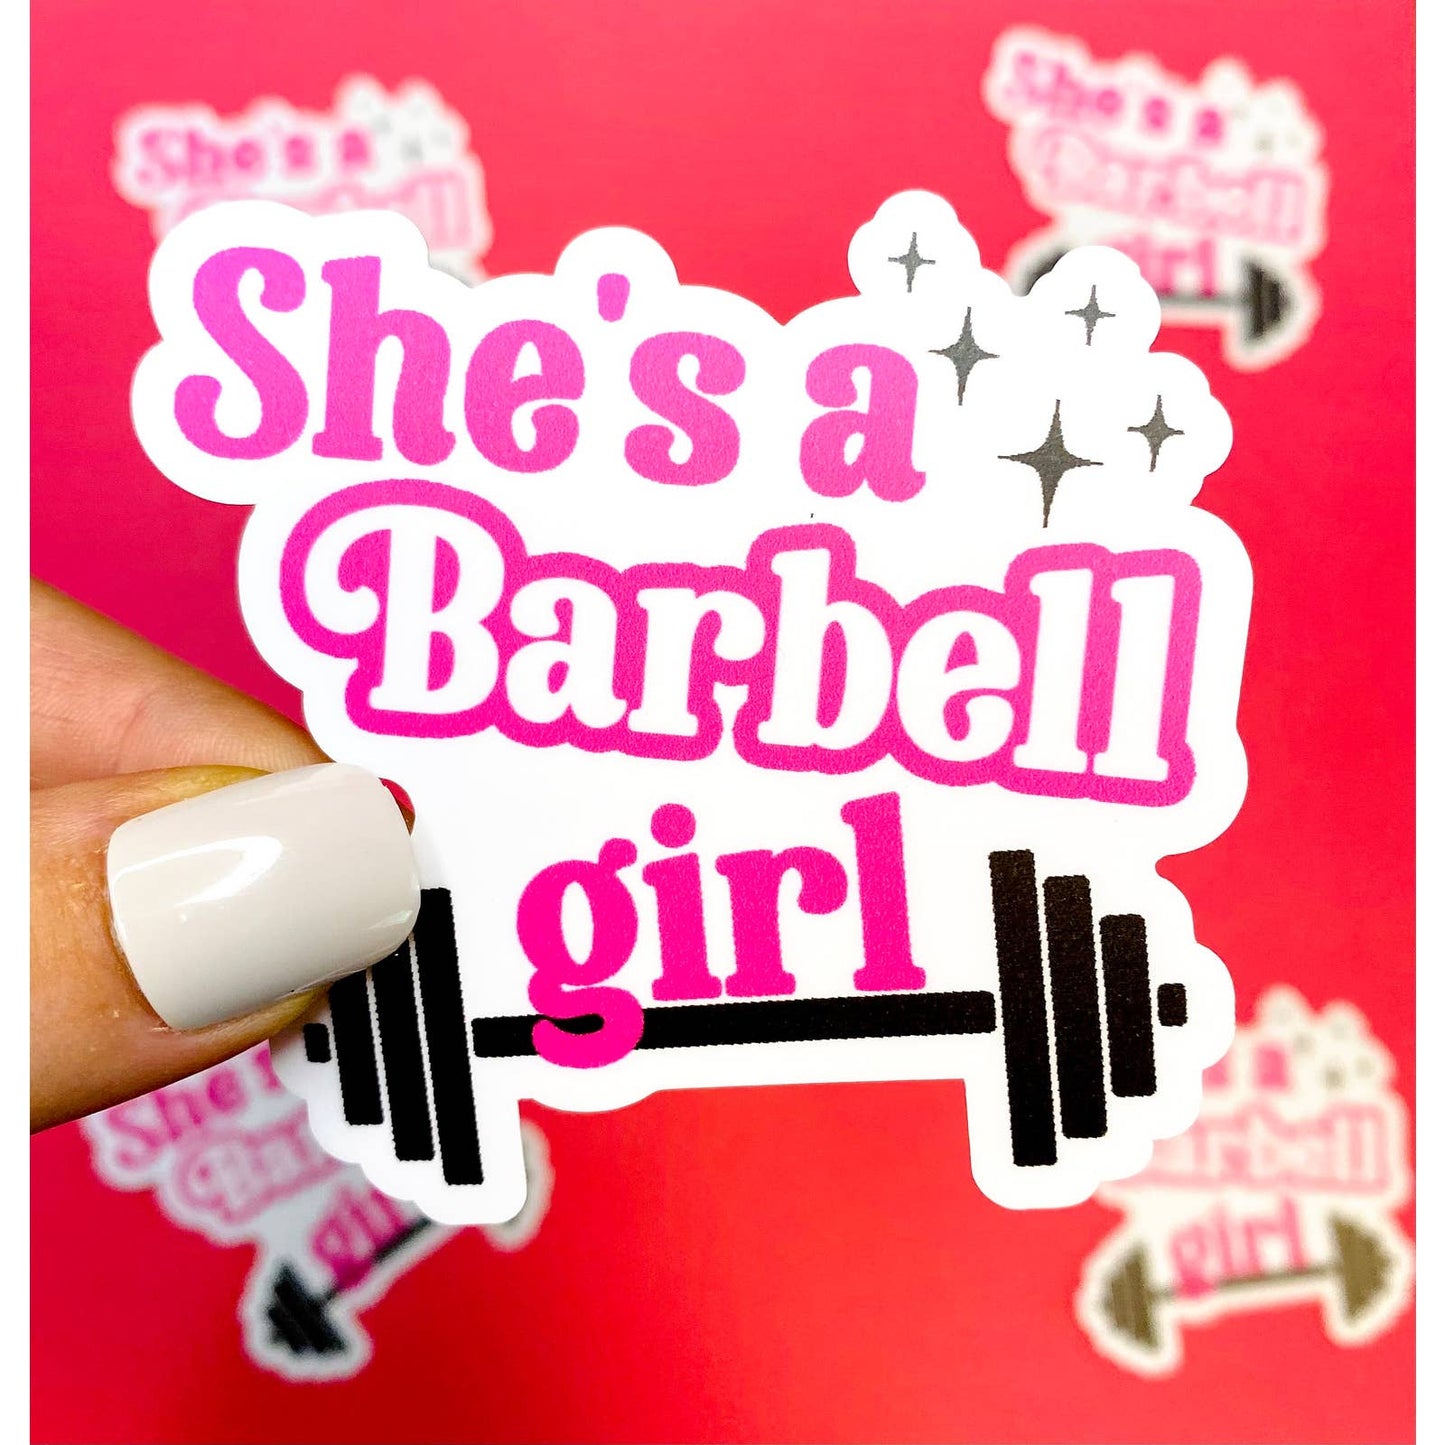 Barbell Girl Sticker